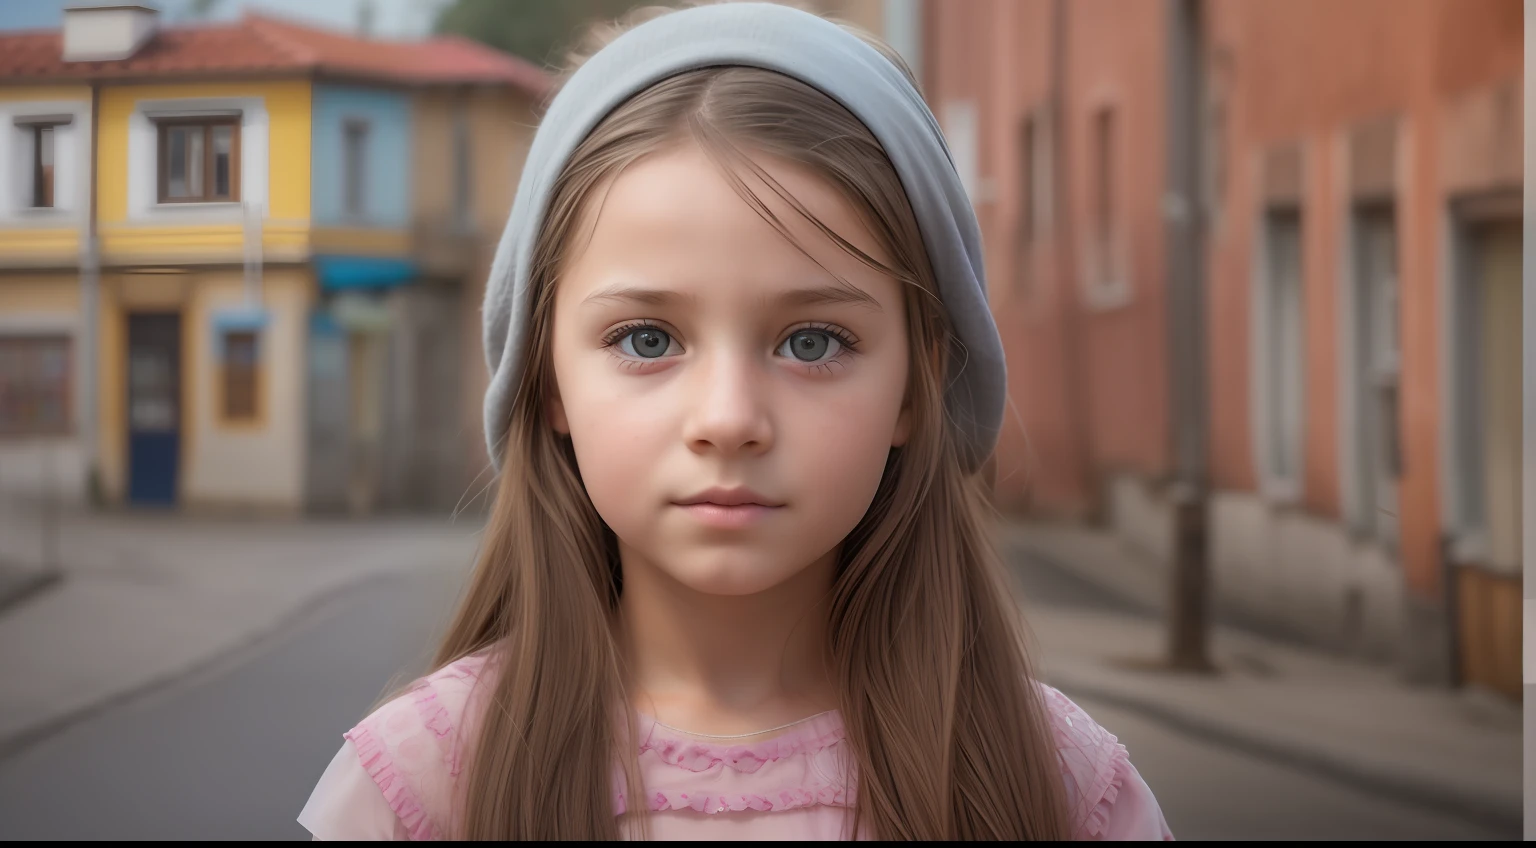 "Genera una imagen hiperrealista de una niña bosnia de 10 años con rasgos faciales auténticos, en un contexto realista de la ciudad, mostrando la mejor calidad y detalles intrincados."